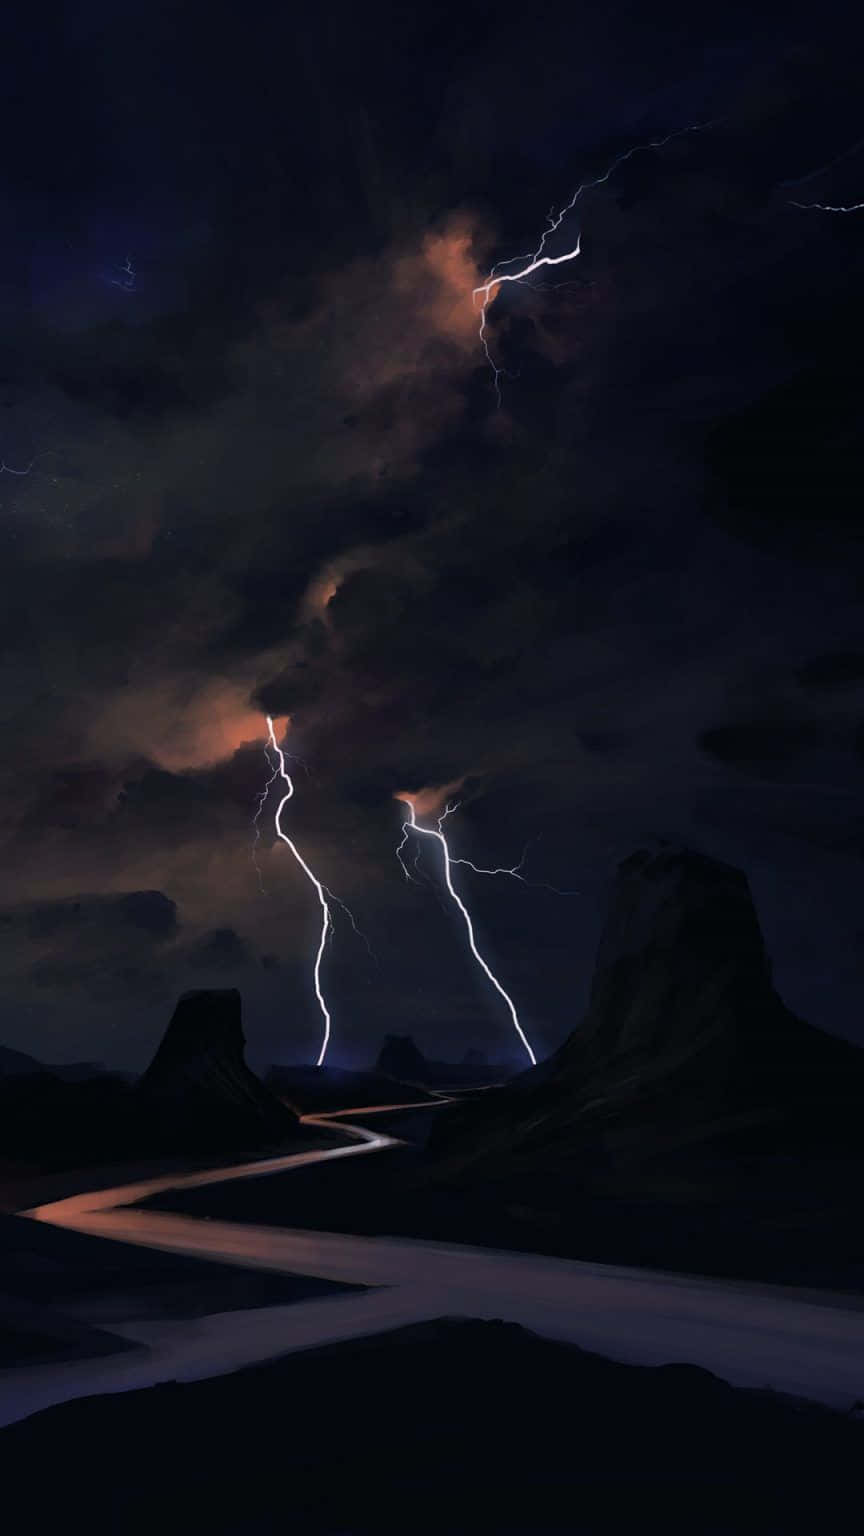 Nighttime Lightning Strike Desert Road Wallpaper